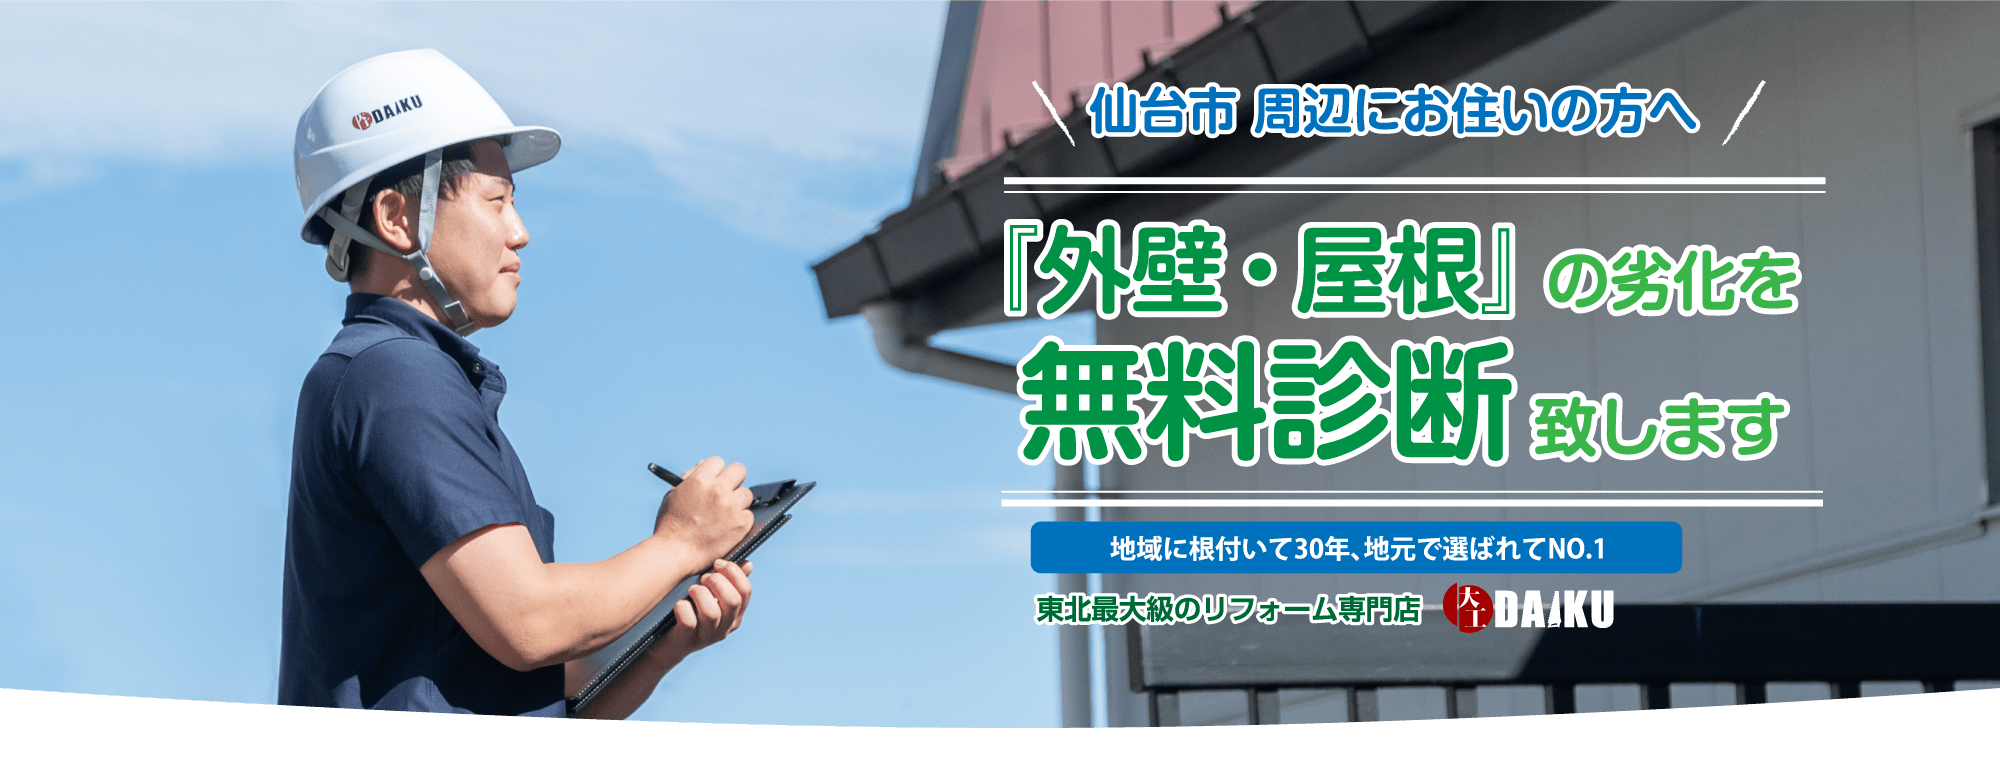 仙台のリフォーム専門店ダイク 仙台市周辺の外壁の劣化を無料診断いたします